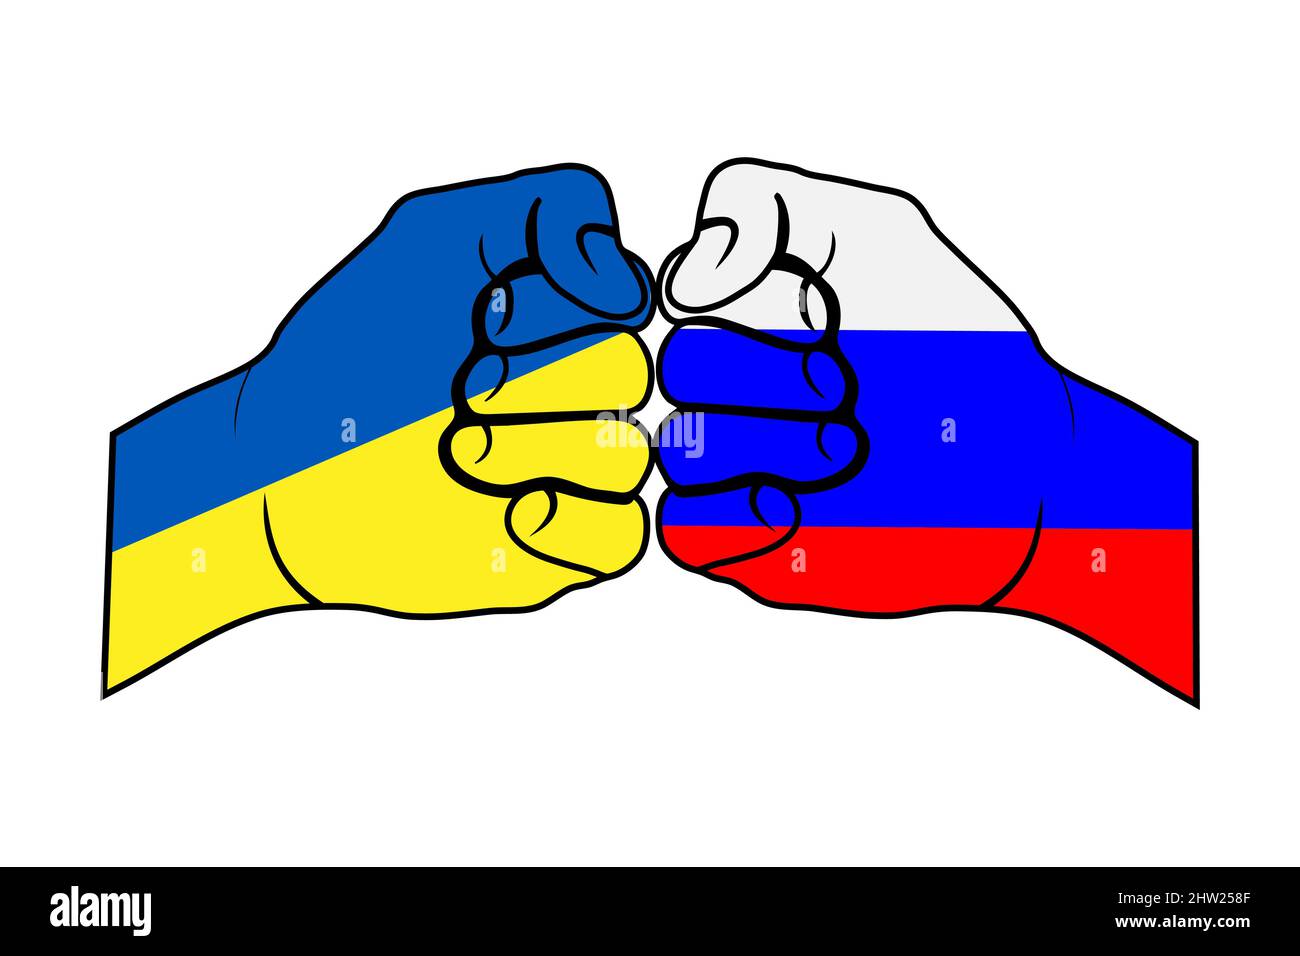 Eine Faust in den Farben der russischen Flagge kollidiert mit einer Faust  in den Farben der ukrainischen Flagge Stock-Vektorgrafik - Alamy